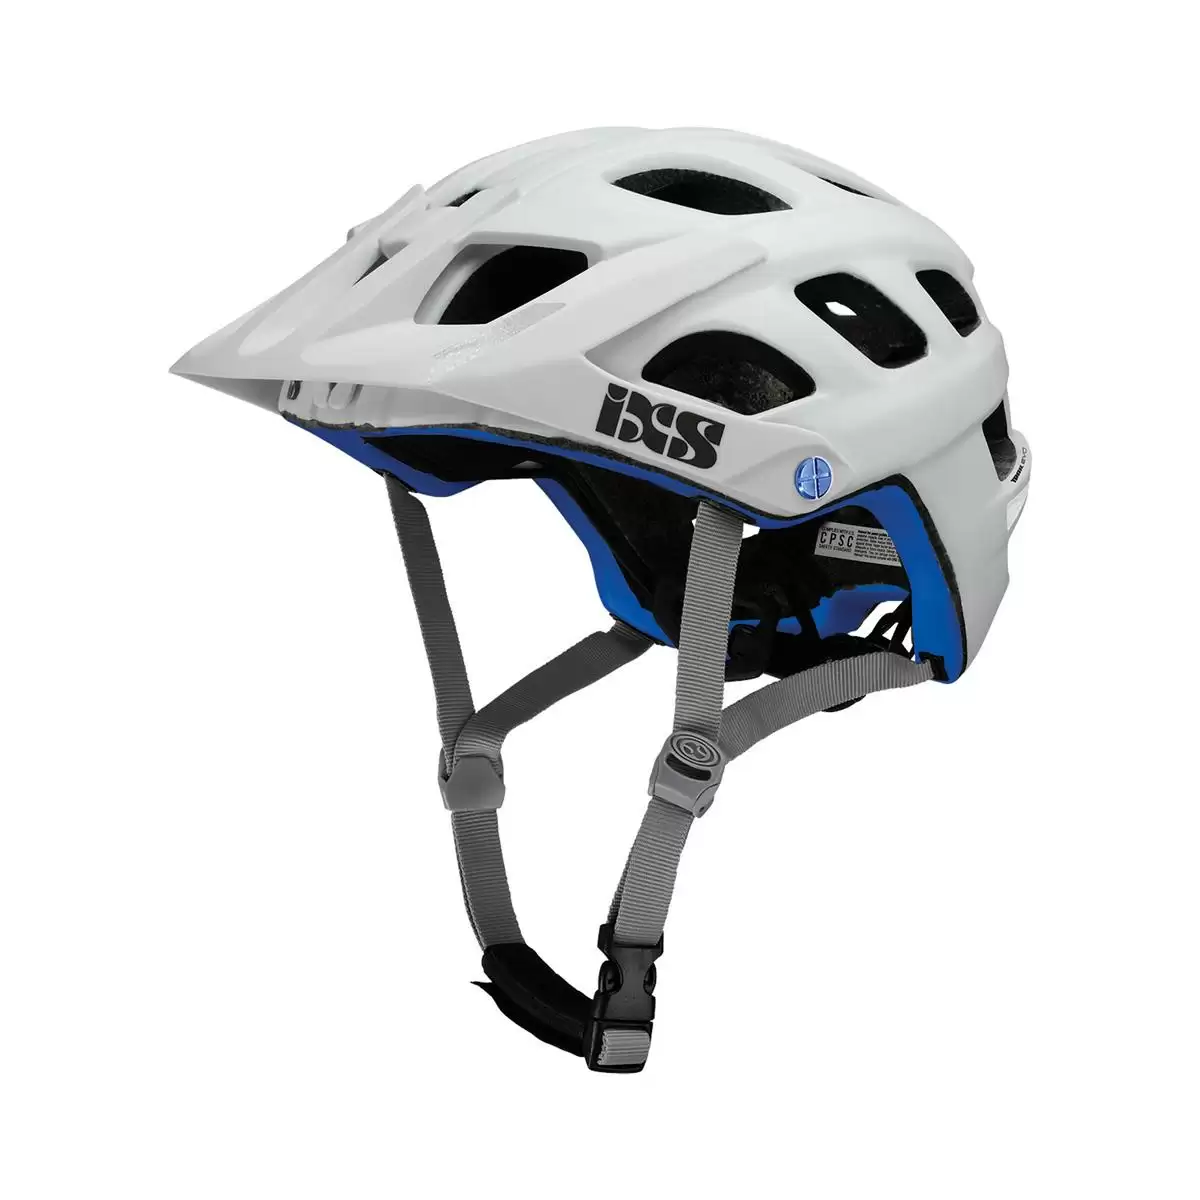 Henduro Helmet Trail Evo E-Bike Edition White Size M/L (58-62cm) - image